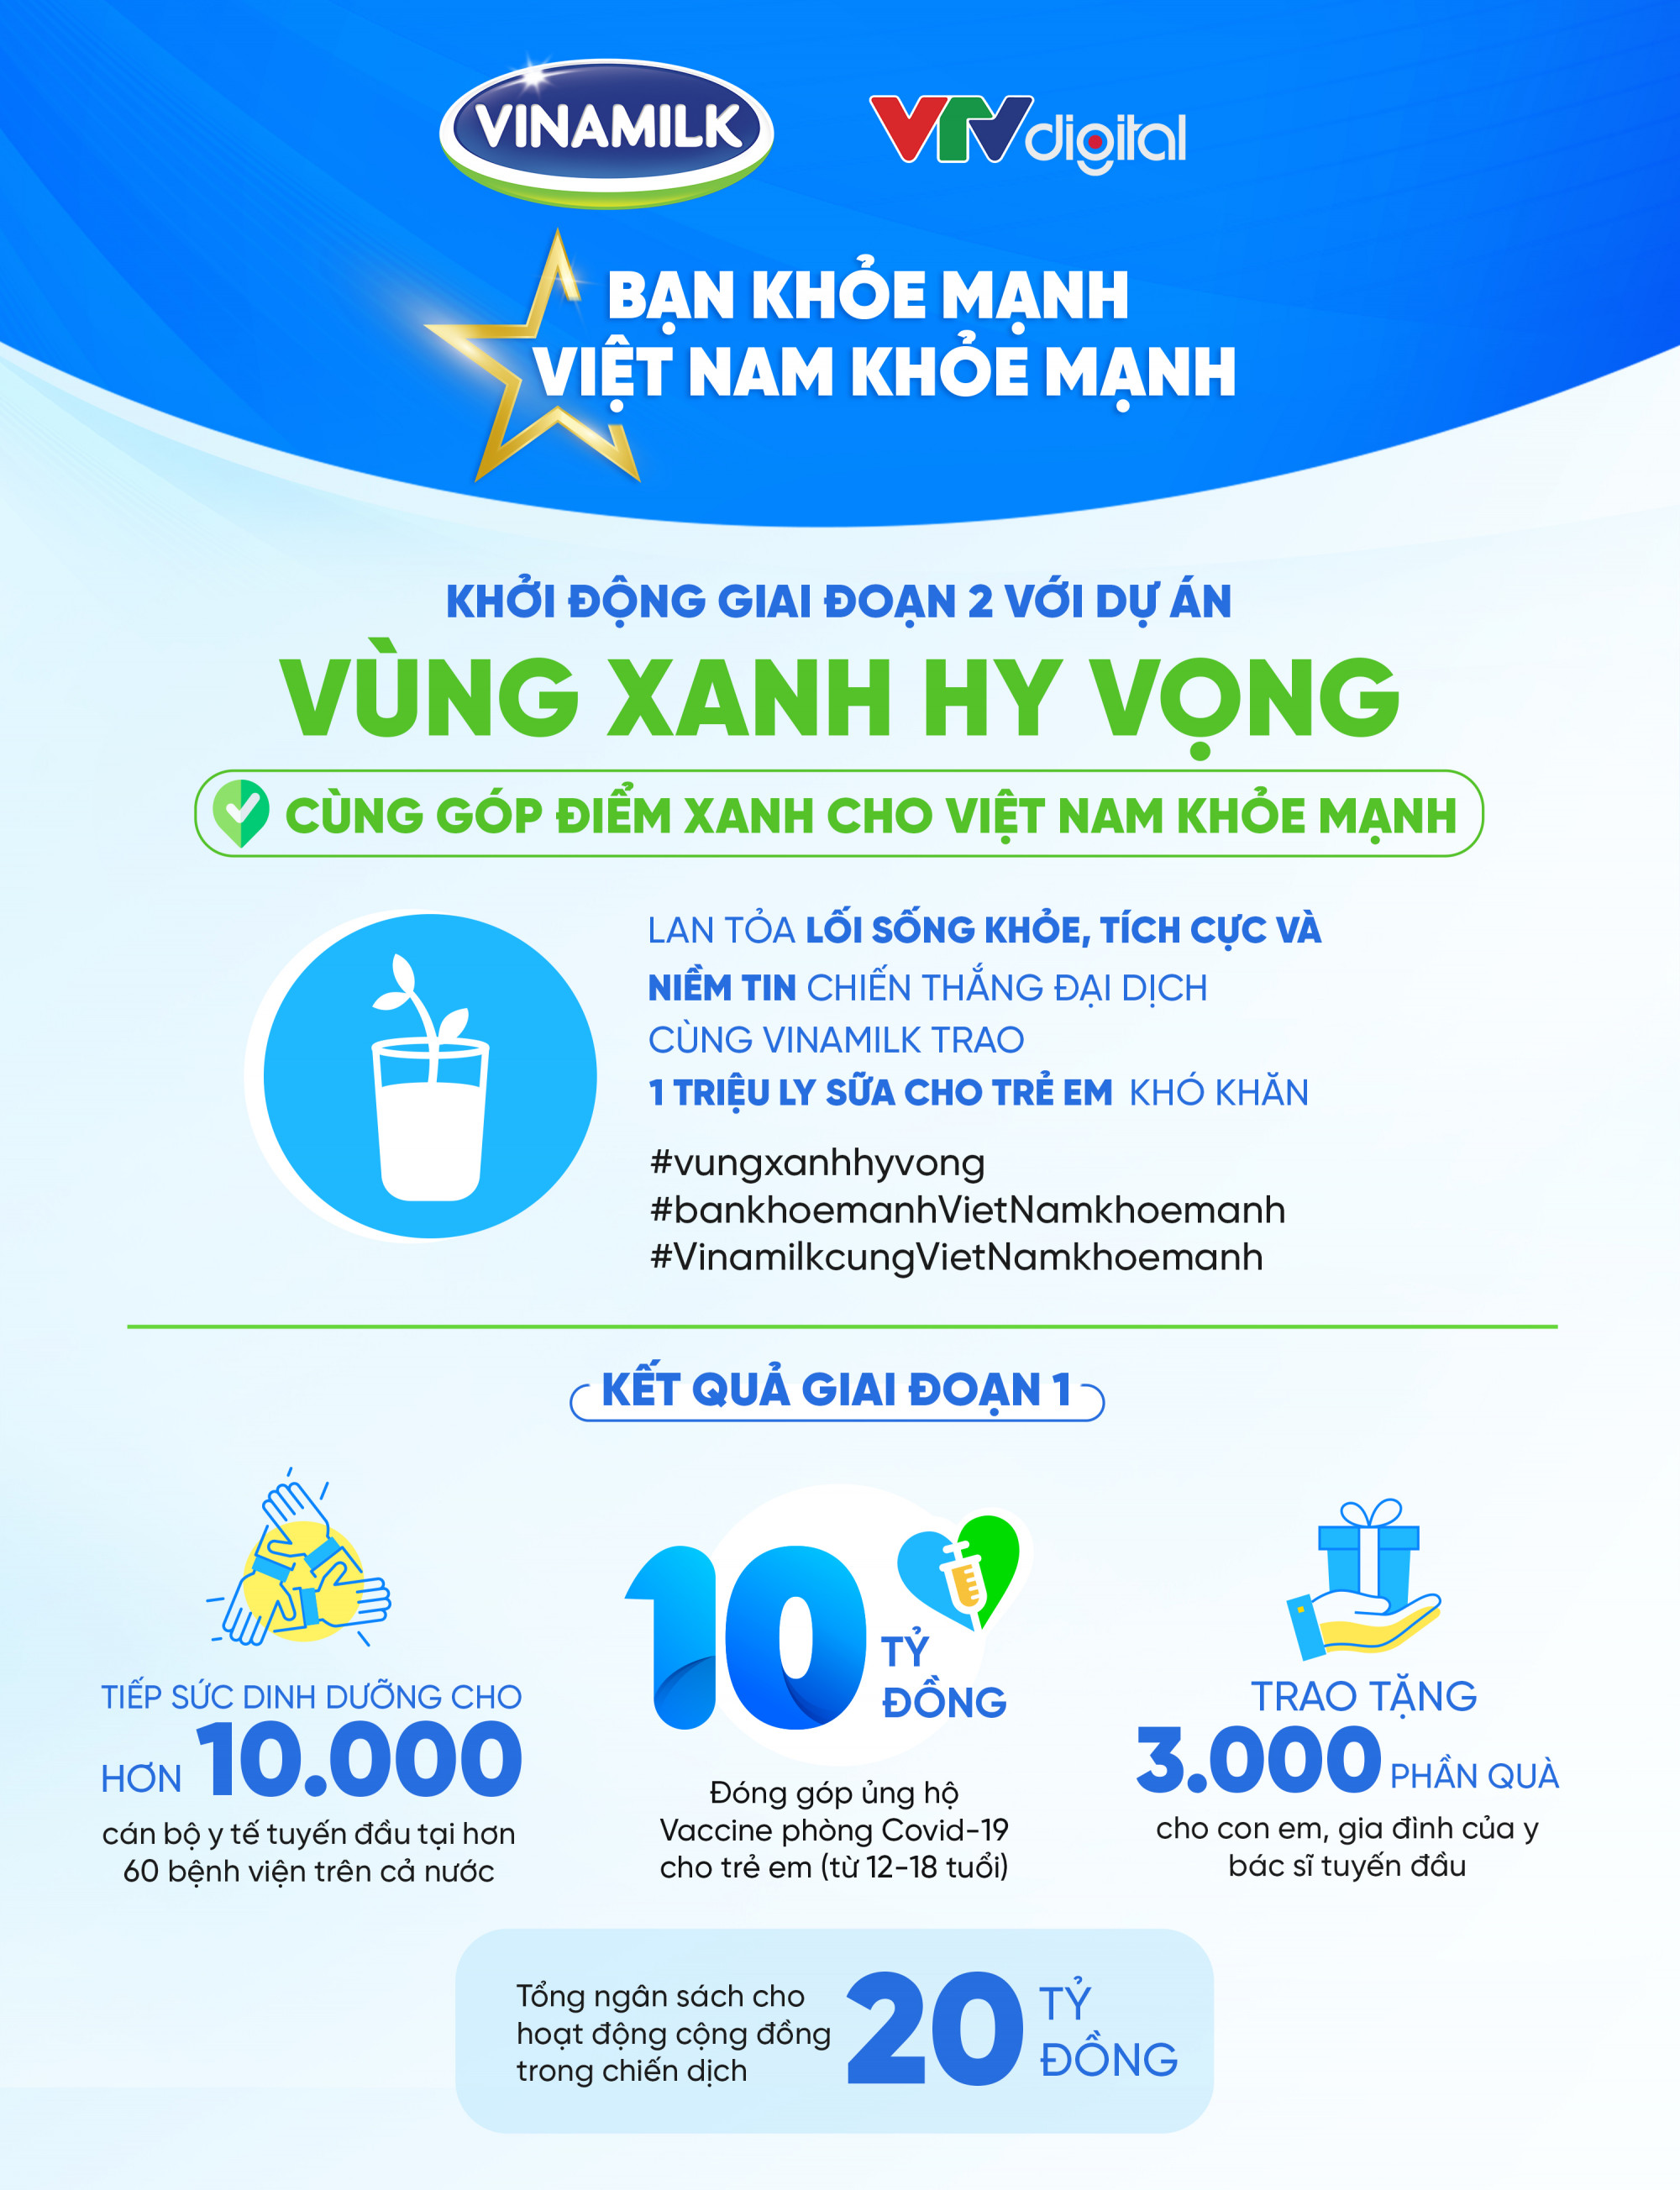 Tổng quan các hoạt động trong khuôn khổ chiến dịch “Bạn khỏe mạnh, Việt Nam khỏe mạnh” 